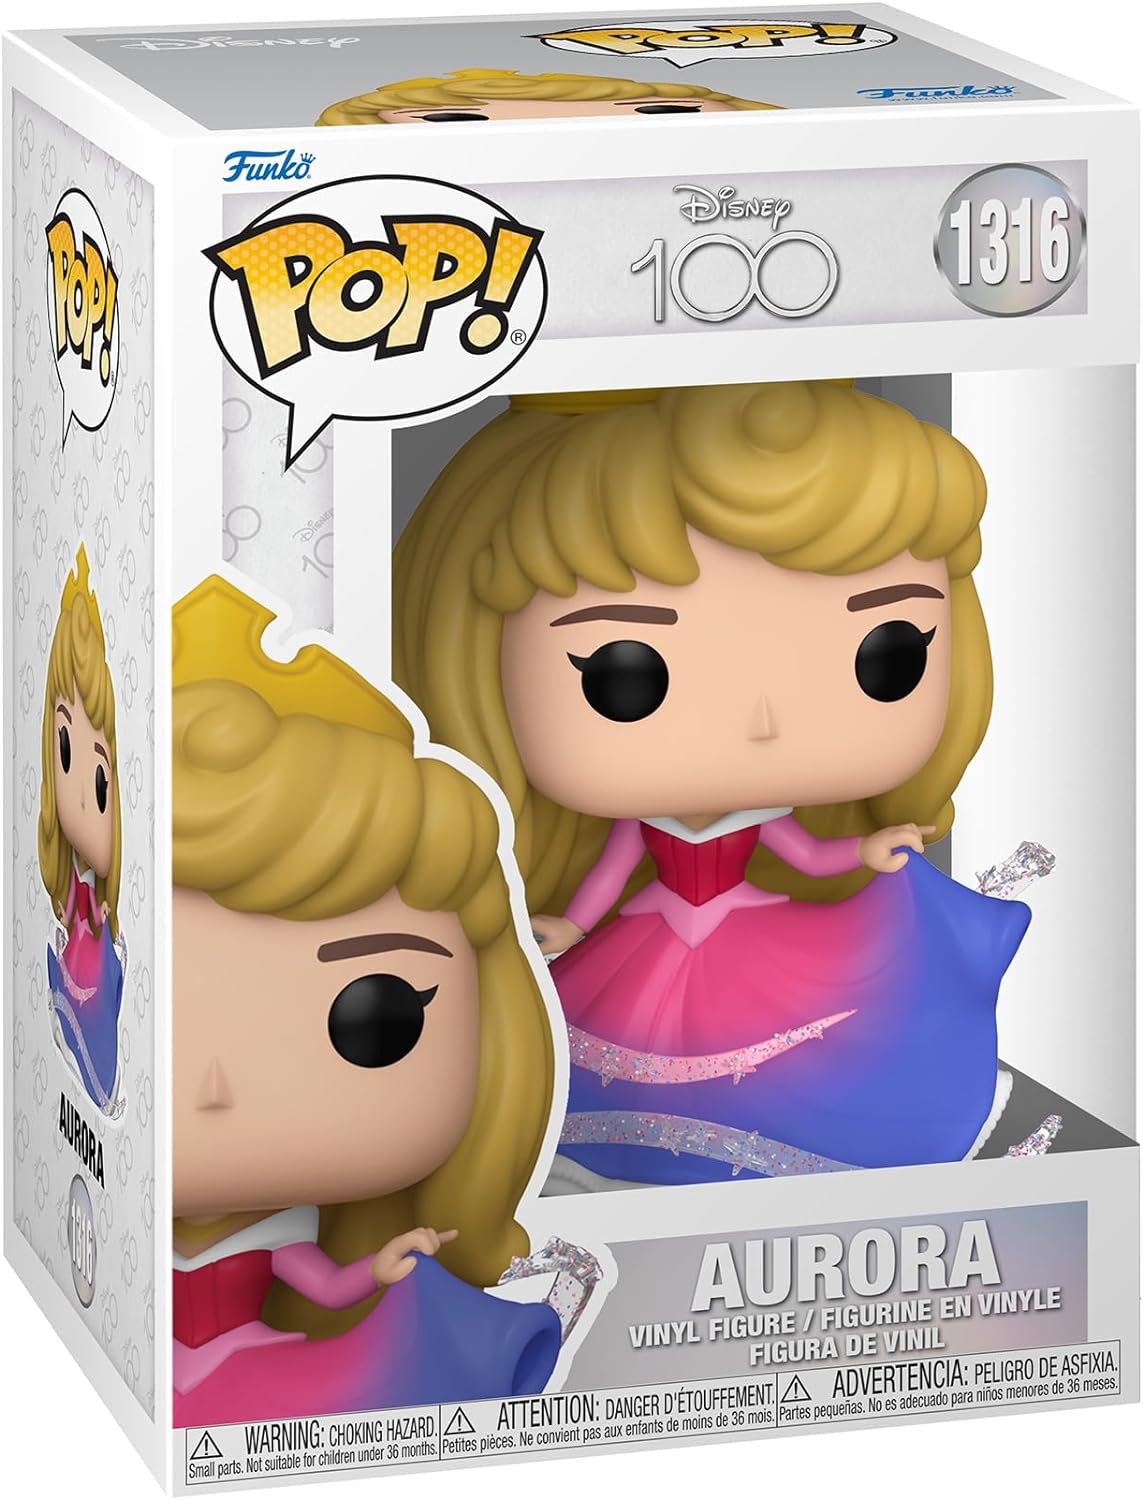 Funko Pop! Disney: Disney 100 – Aurora #1316